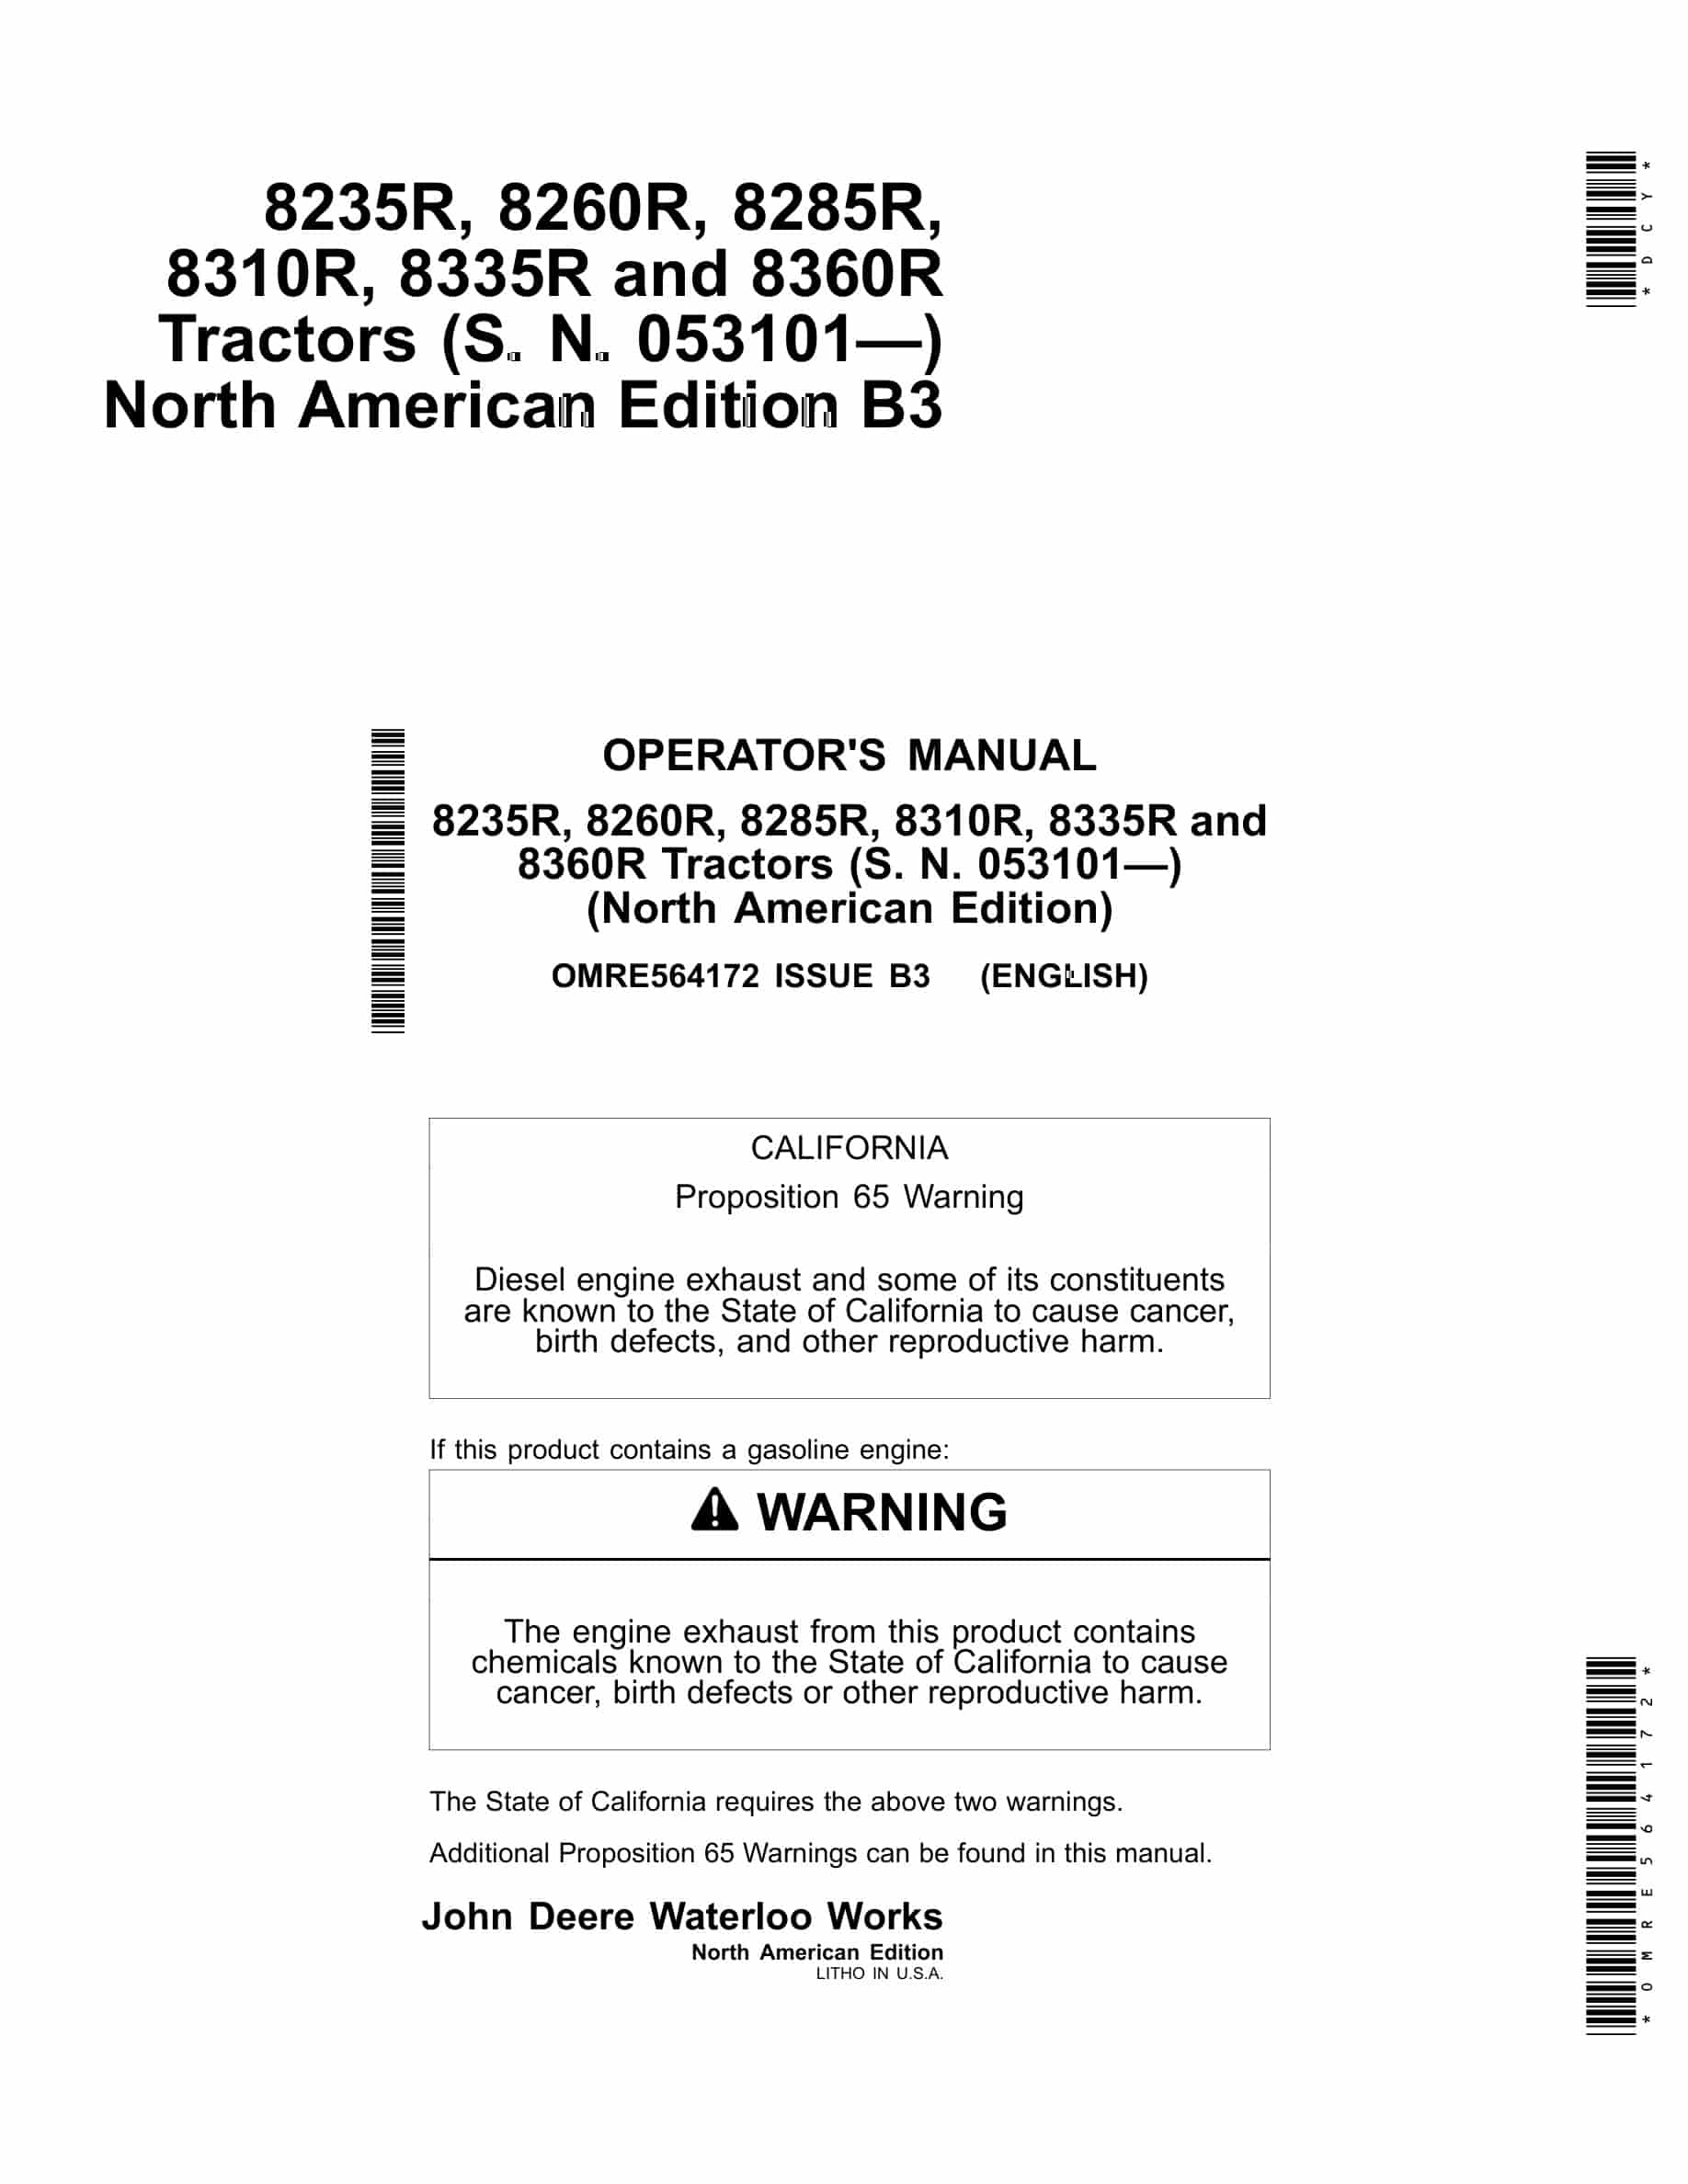 John Deere 8235R, 8260R, 8285R, 8310R, 8335R and 8360R Tractor Operator Manual OMRE564172-1